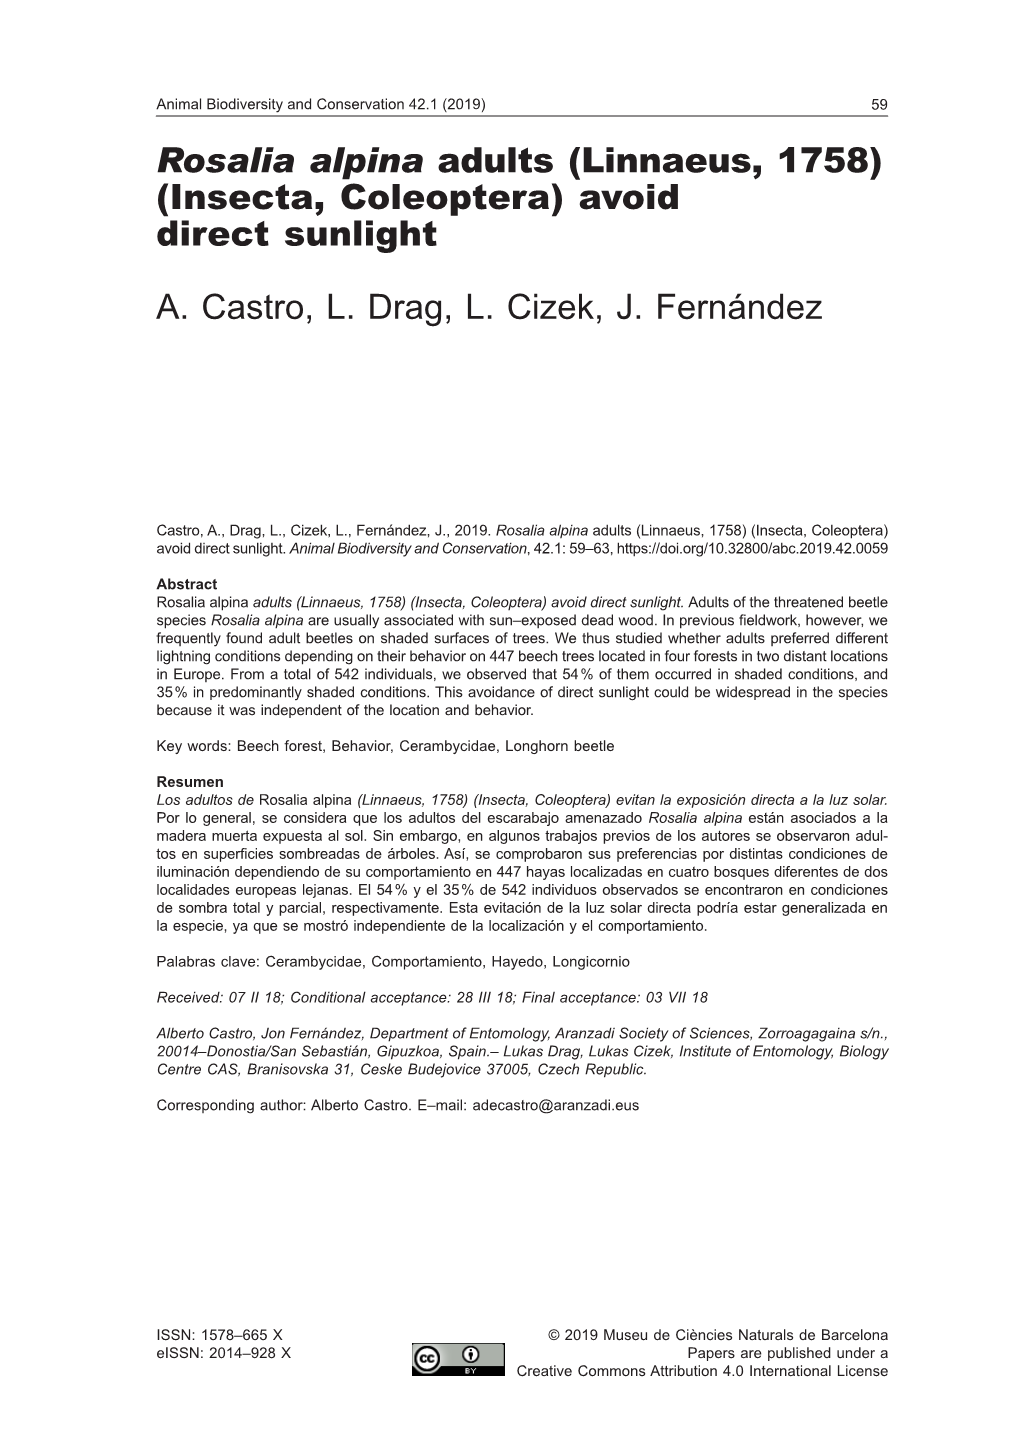 Rosalia Alpina Adults (Linnaeus, 1758) (Insecta, Coleoptera) Avoid Direct Sunlight